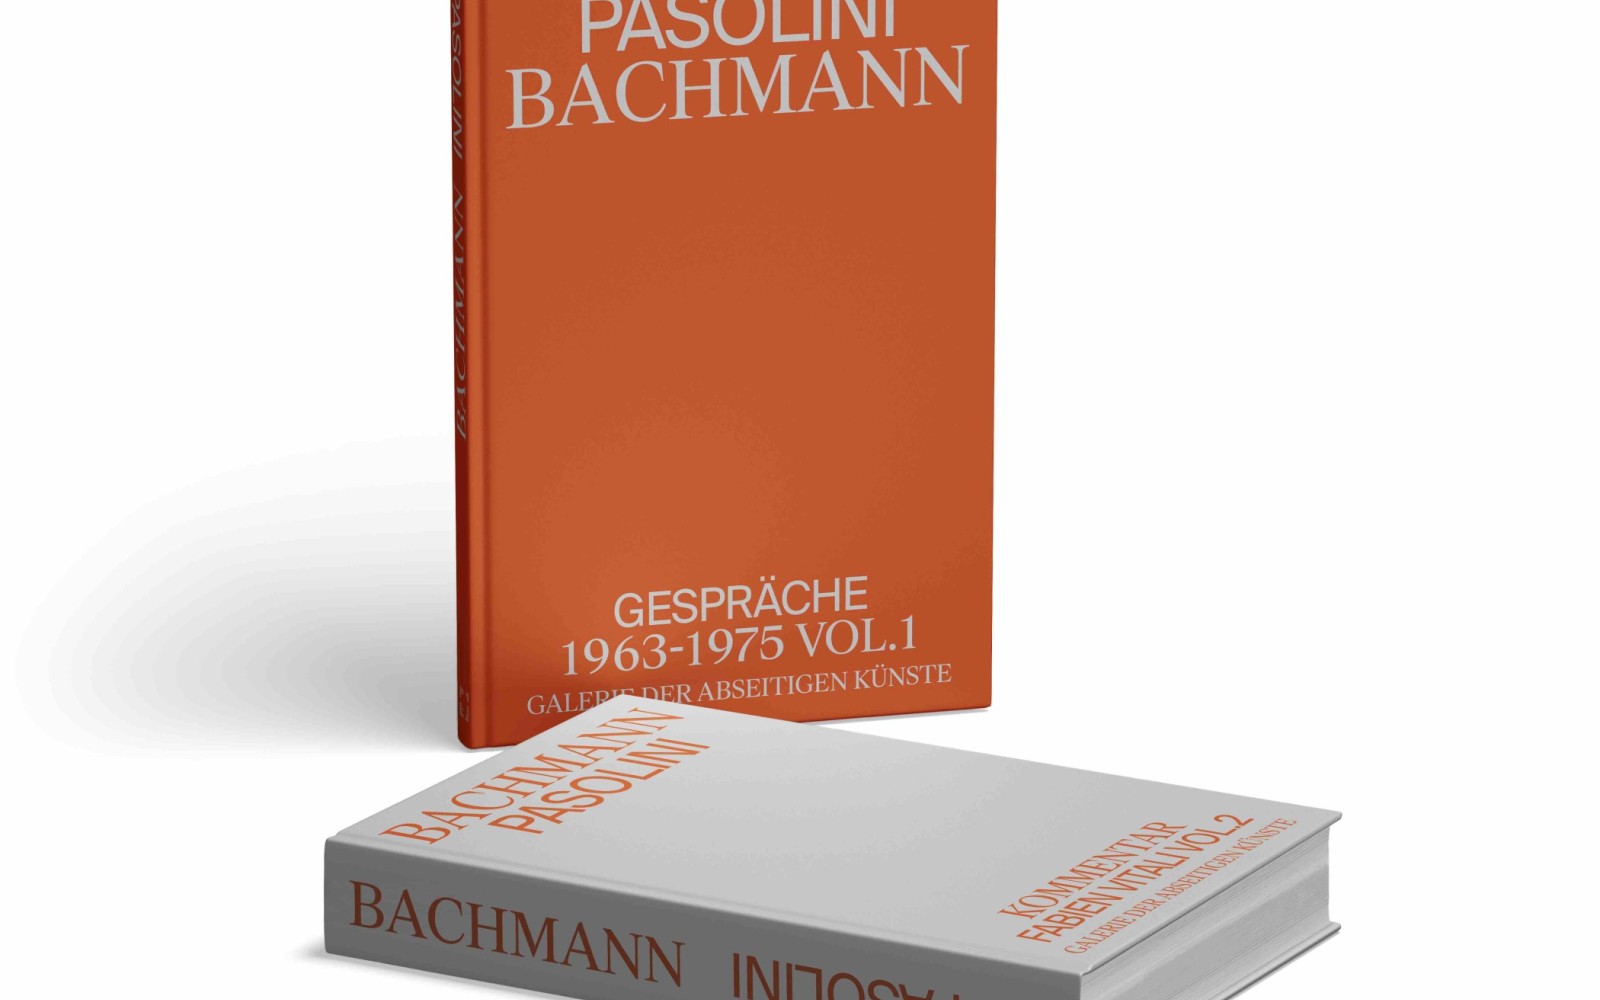 Pasolini Bachmann Gespräche 1963-1975